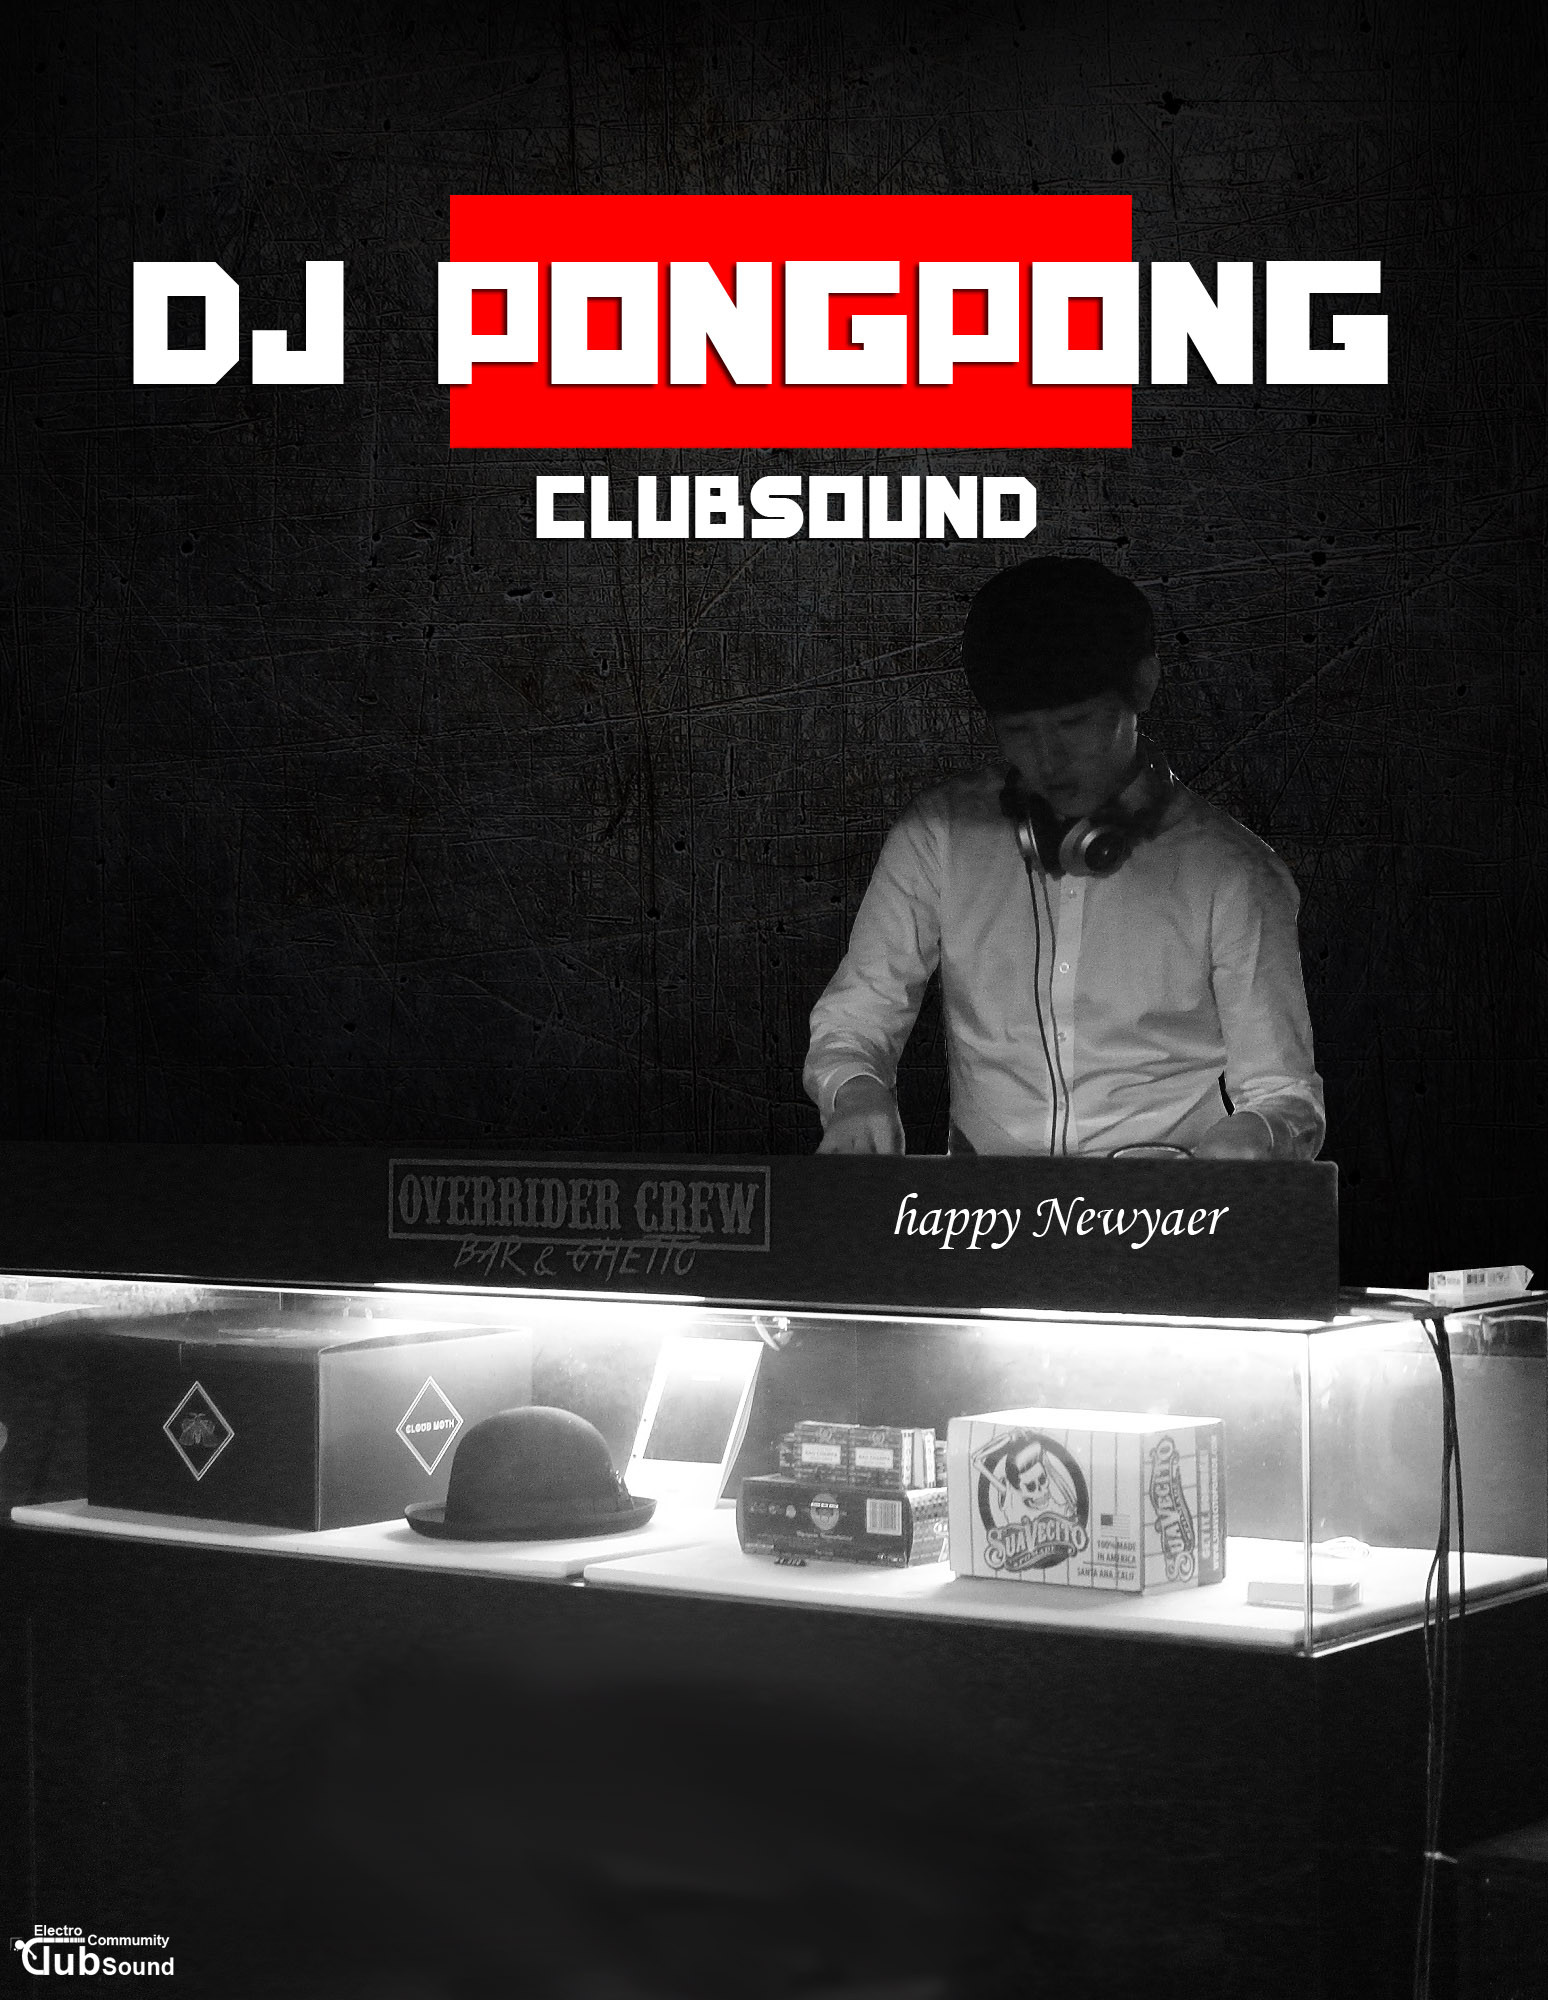 KakaoTalk_20151230_234736181.jpg : DJ Pong Pong 완전 터지는 새로운 믹셋!! 등장!! 나도 베스트 가보자 5탄!! 즐감하세영!!!